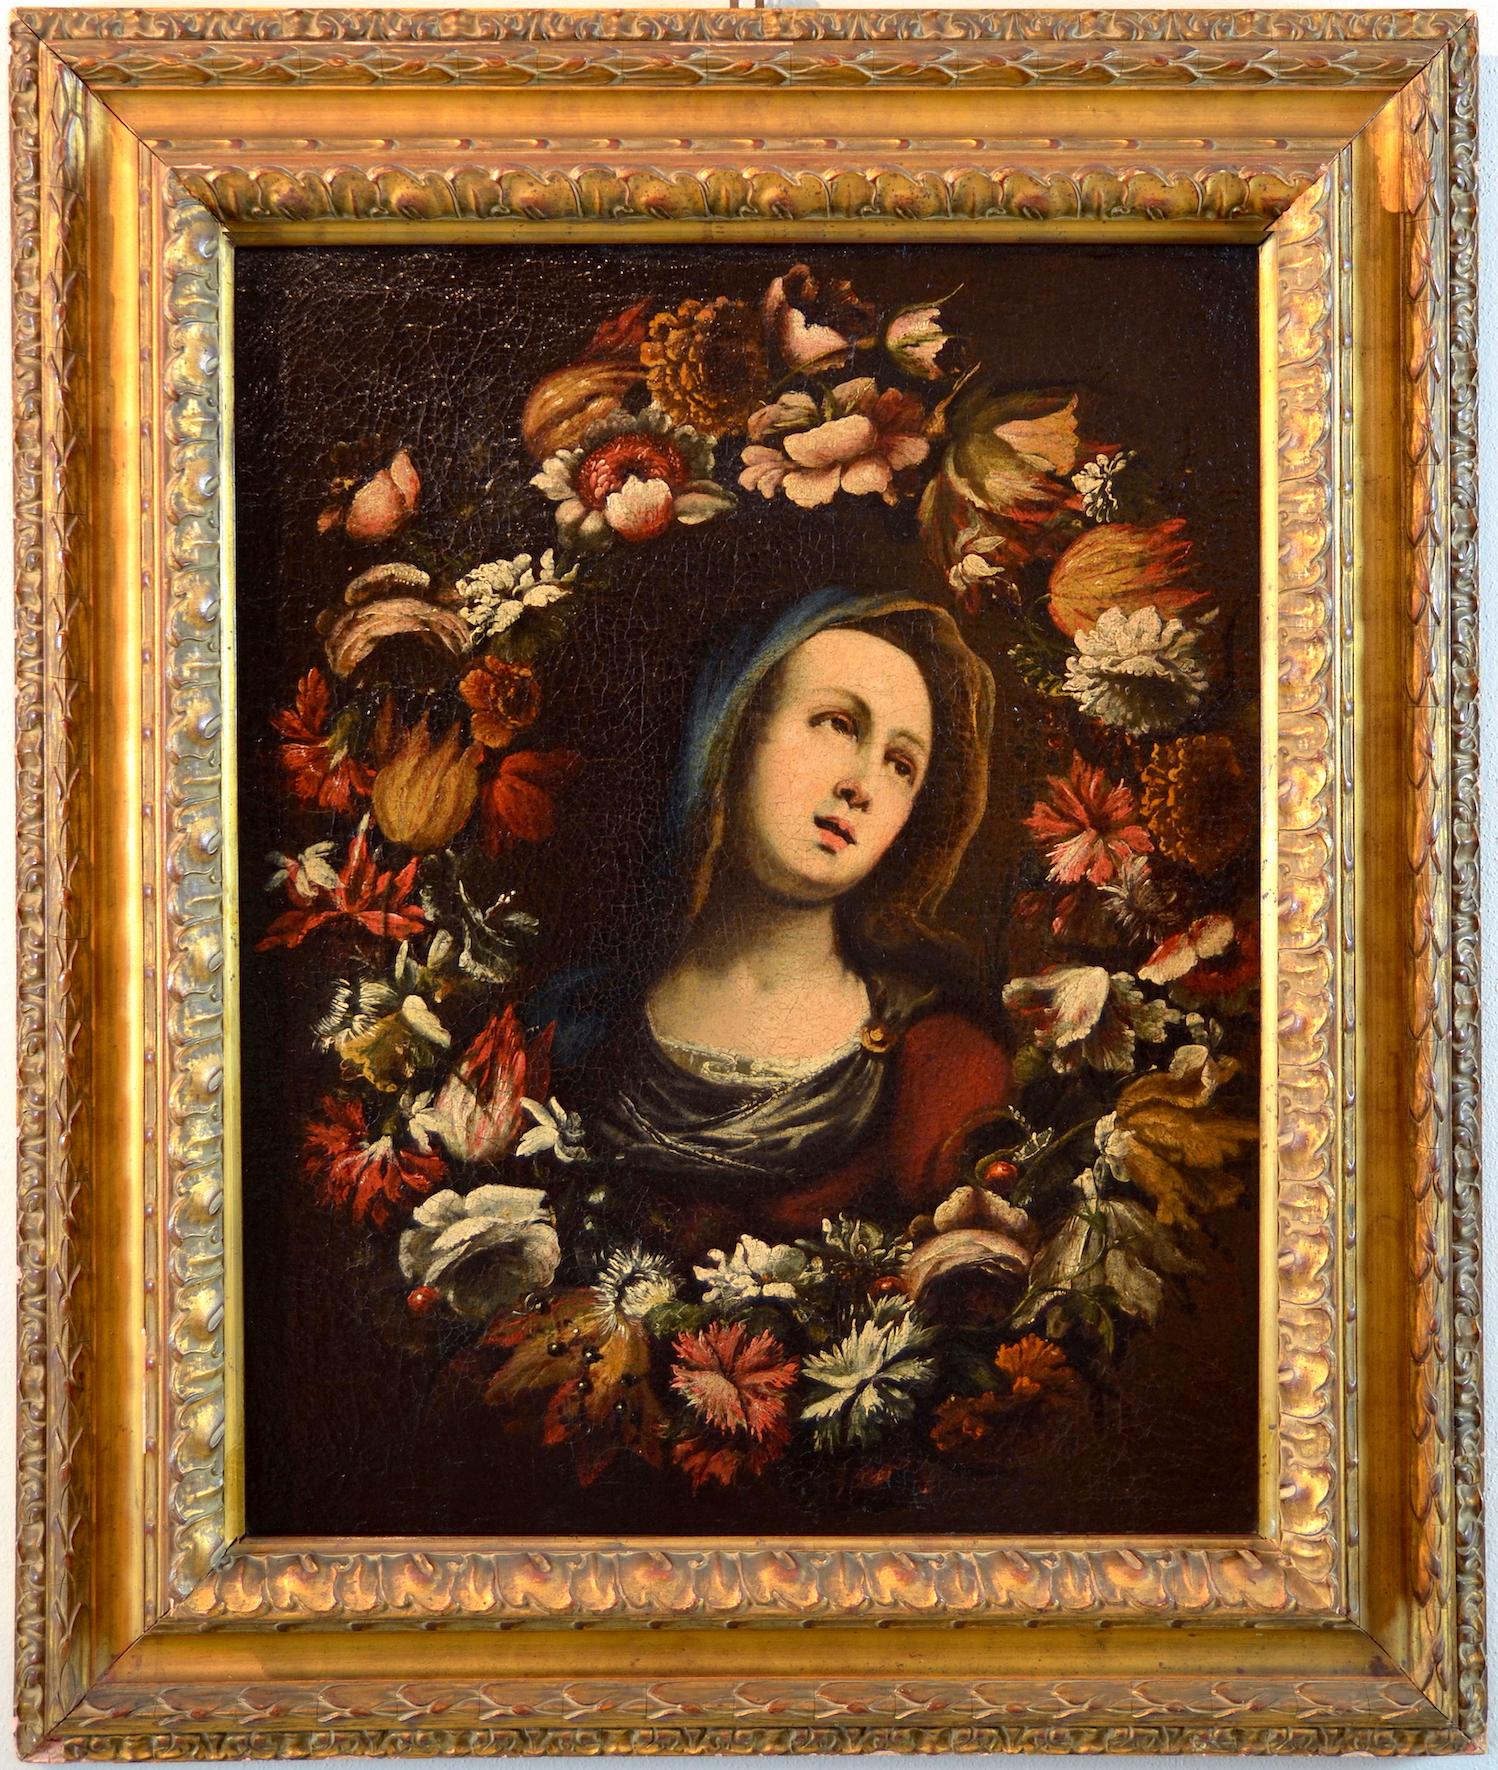 Peinture à l'huile sur toile fleur de guirlande vierge, huile sur toile, maître ancien, XVIIe siècle, Italie